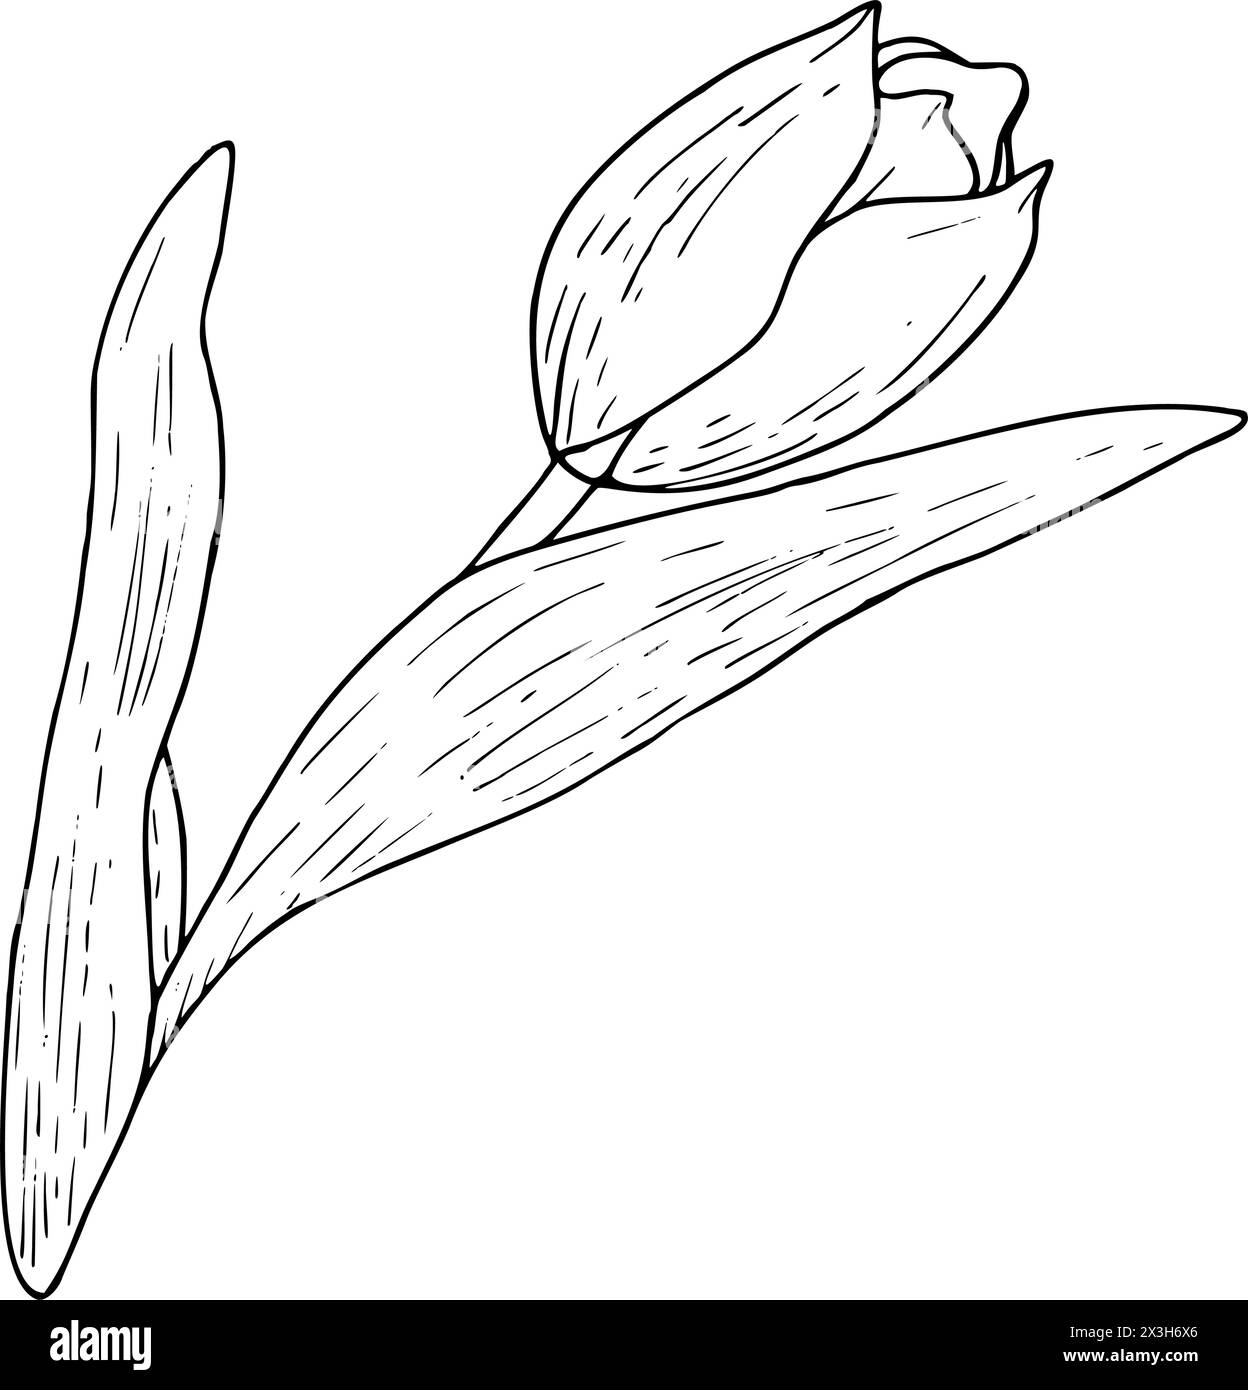 Tulpenblume Vektor-Illustration. Gekrümmte Blätter Glühlampenkopf schwarz umrissene grafische Zeichnung. Grußkarte mit botanischer Blüte. Kontur der Tintenlinie Stock Vektor